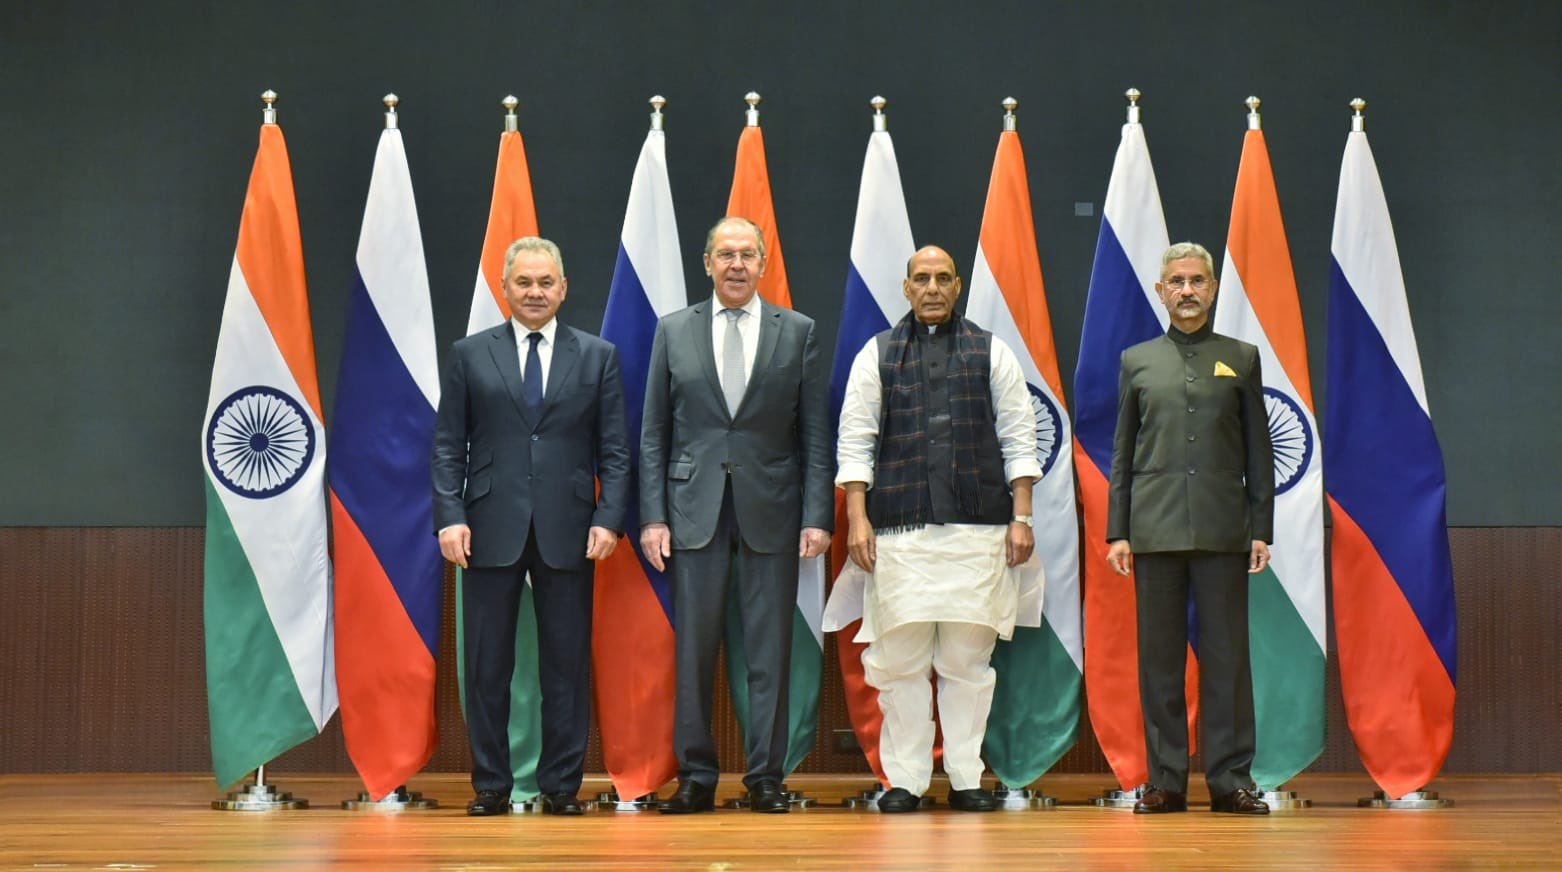 भारत व रूस के बीच 4 समझौतों पर हस्ताक्षर, रक्षा और विदेश मंत्रियों के बीच टू प्लस टू वार्ता